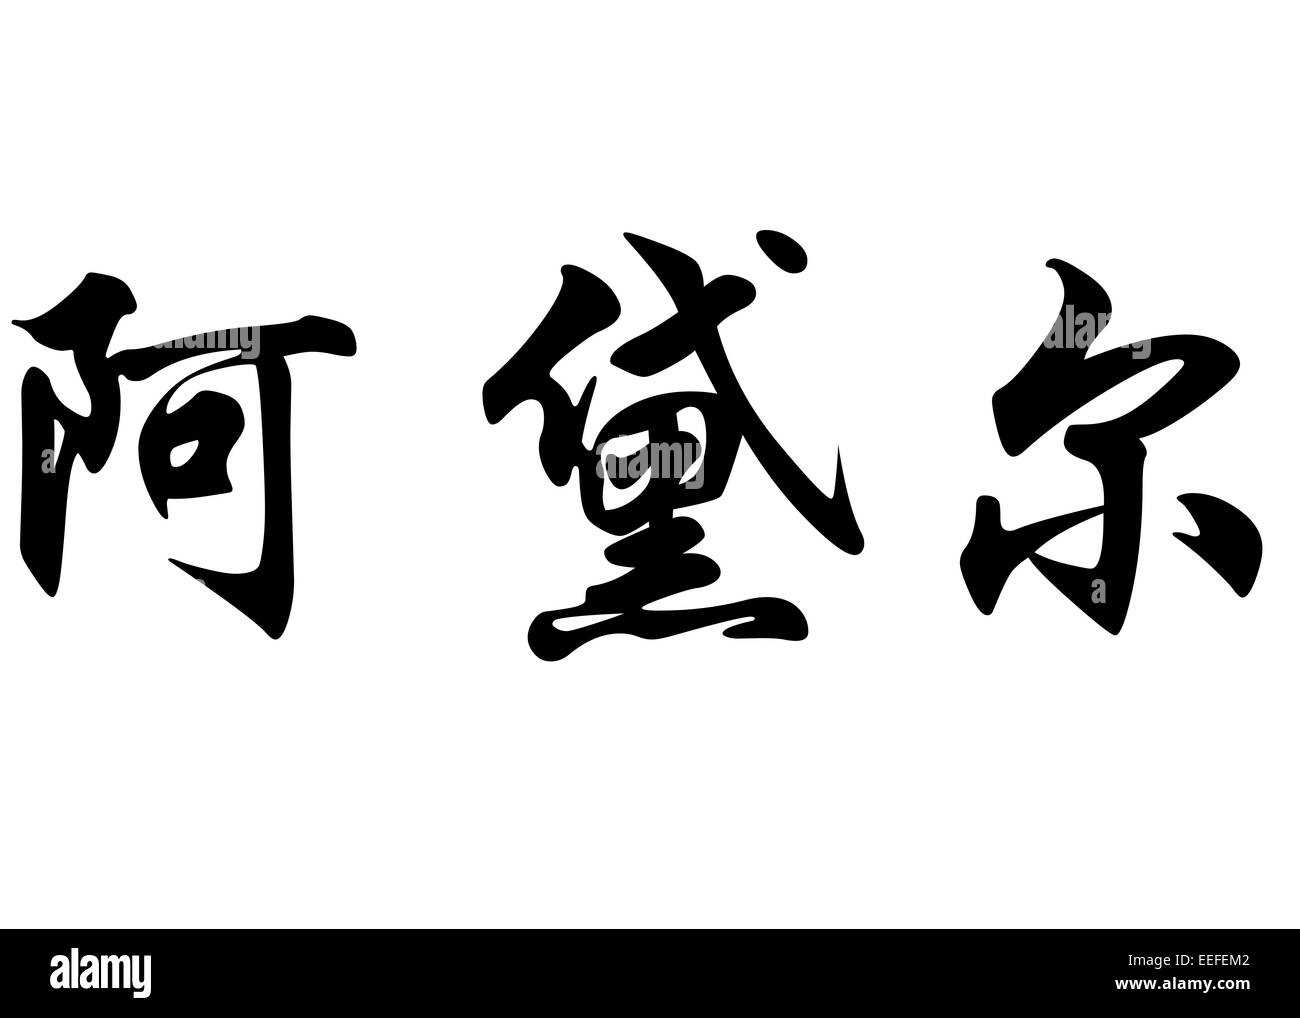 Nom anglais Adele en chinois Calligraphie kanji ou caractères caractères japonais Banque D'Images